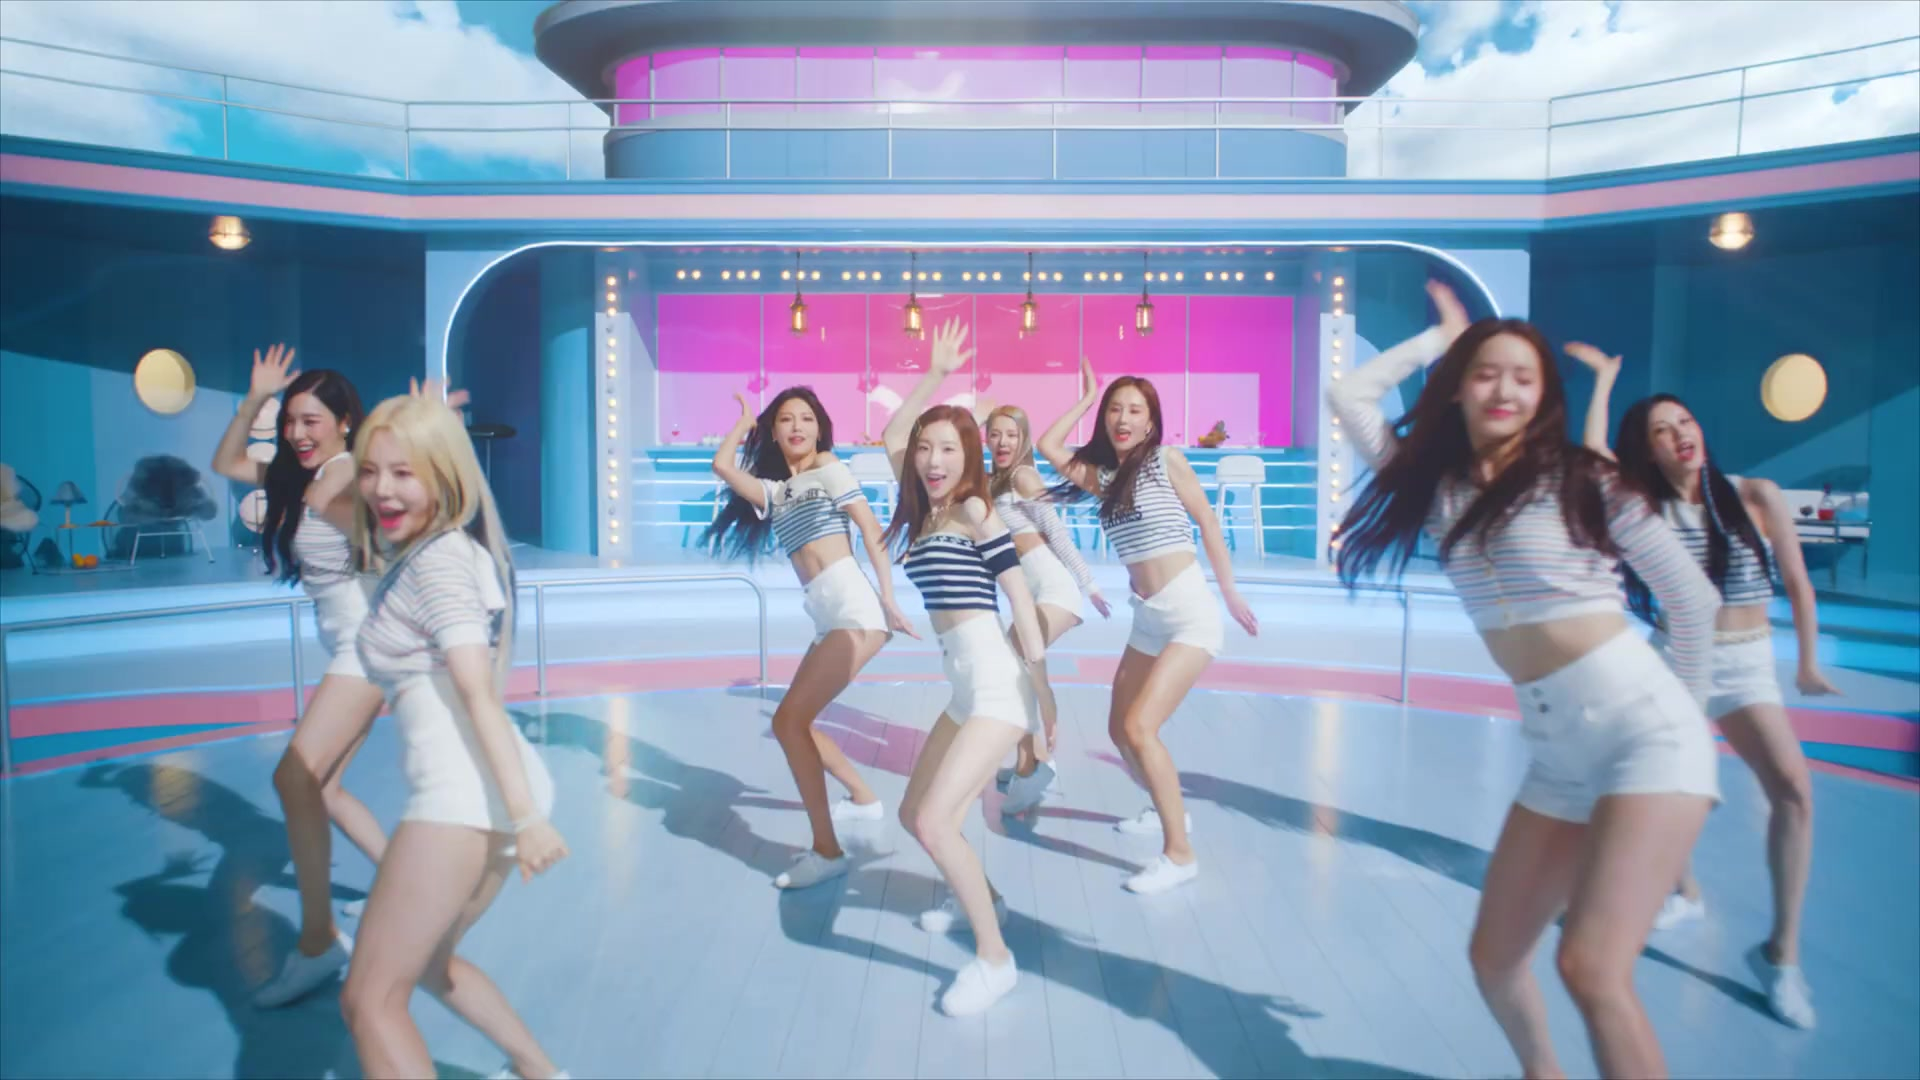 Girls Generation - FOREVER 1